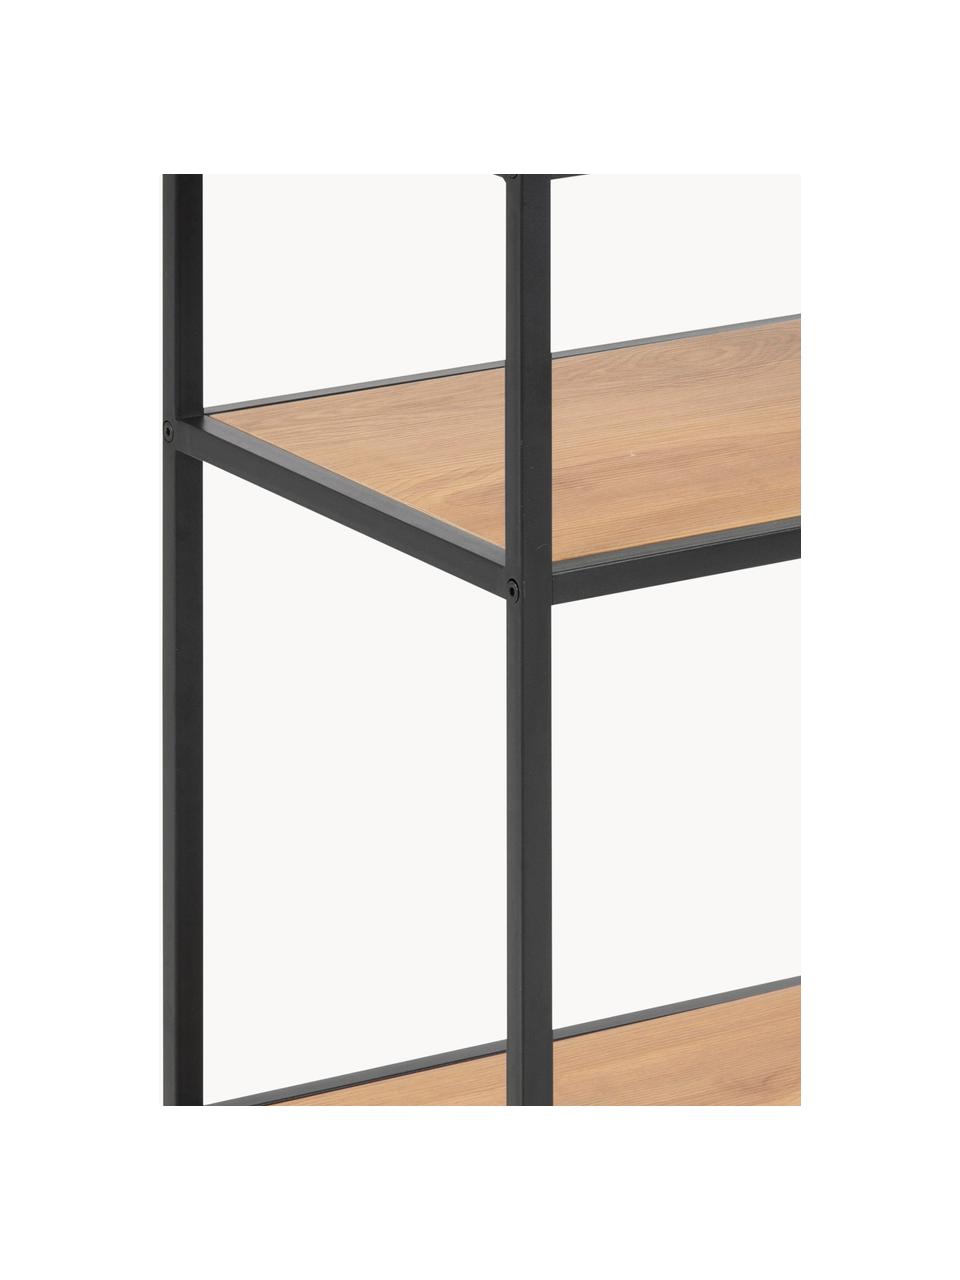 Tavolino Seaford, Struttura: metallo verniciato a polv, Effetto legno, nero, Larg. 42 x Prof. 35 cm